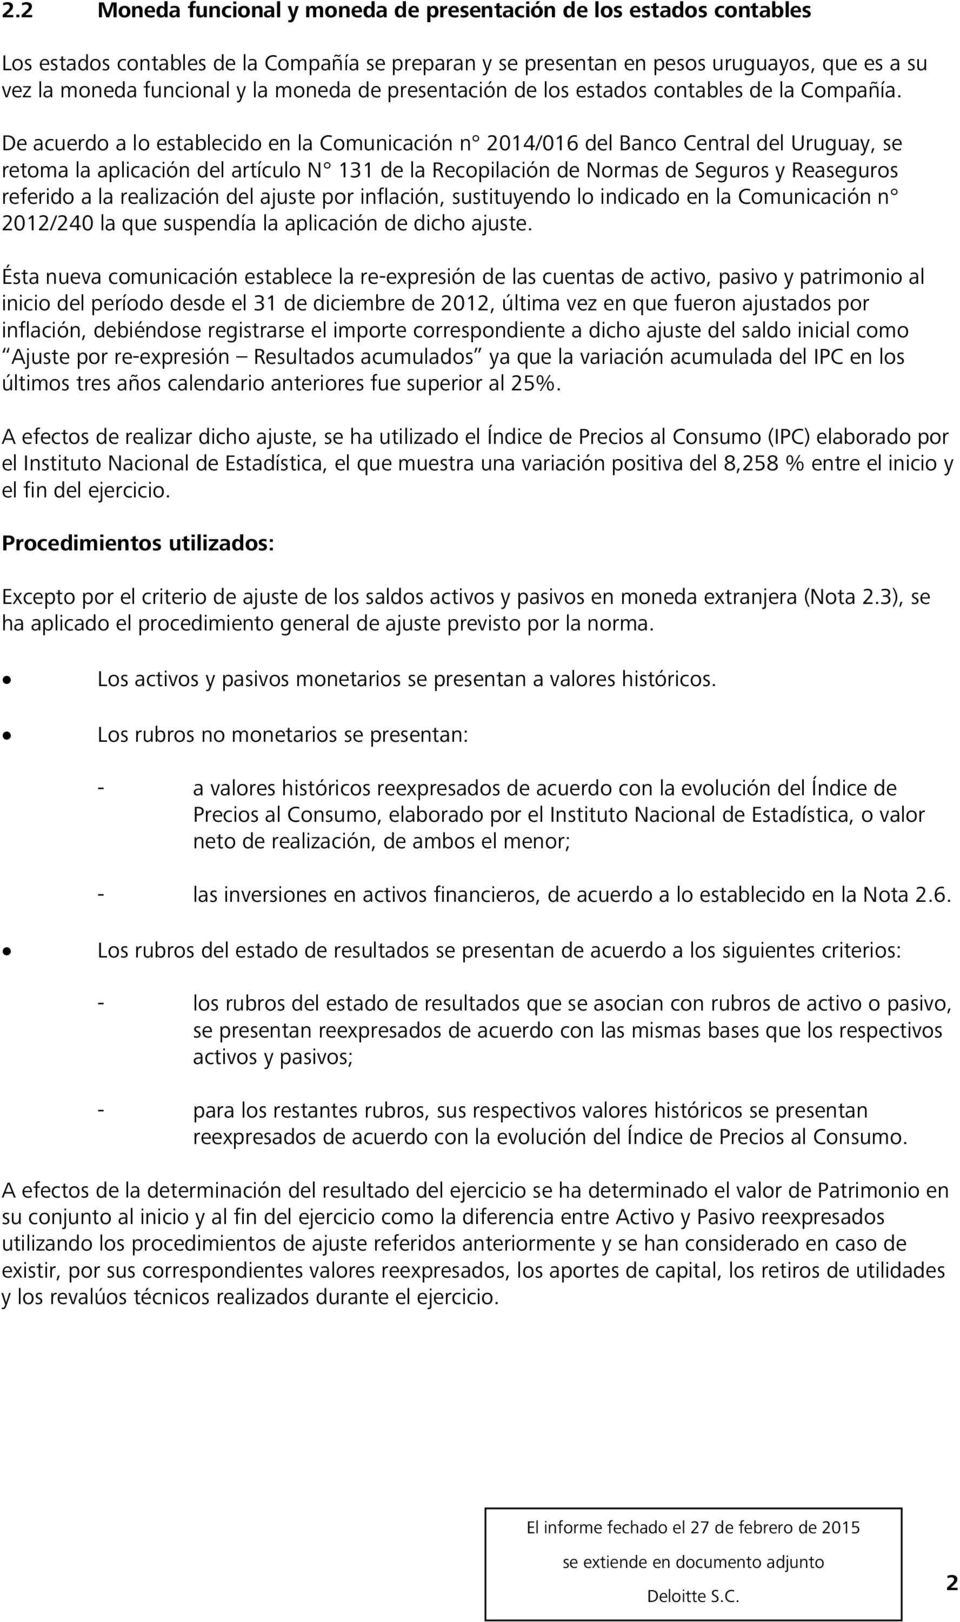 De acuerdo a lo establecido en la Comunicación n 2014/016 del Banco Central del Uruguay, se retoma la aplicación del artículo N 131 de la Recopilación de Normas de Seguros y Reaseguros referido a la